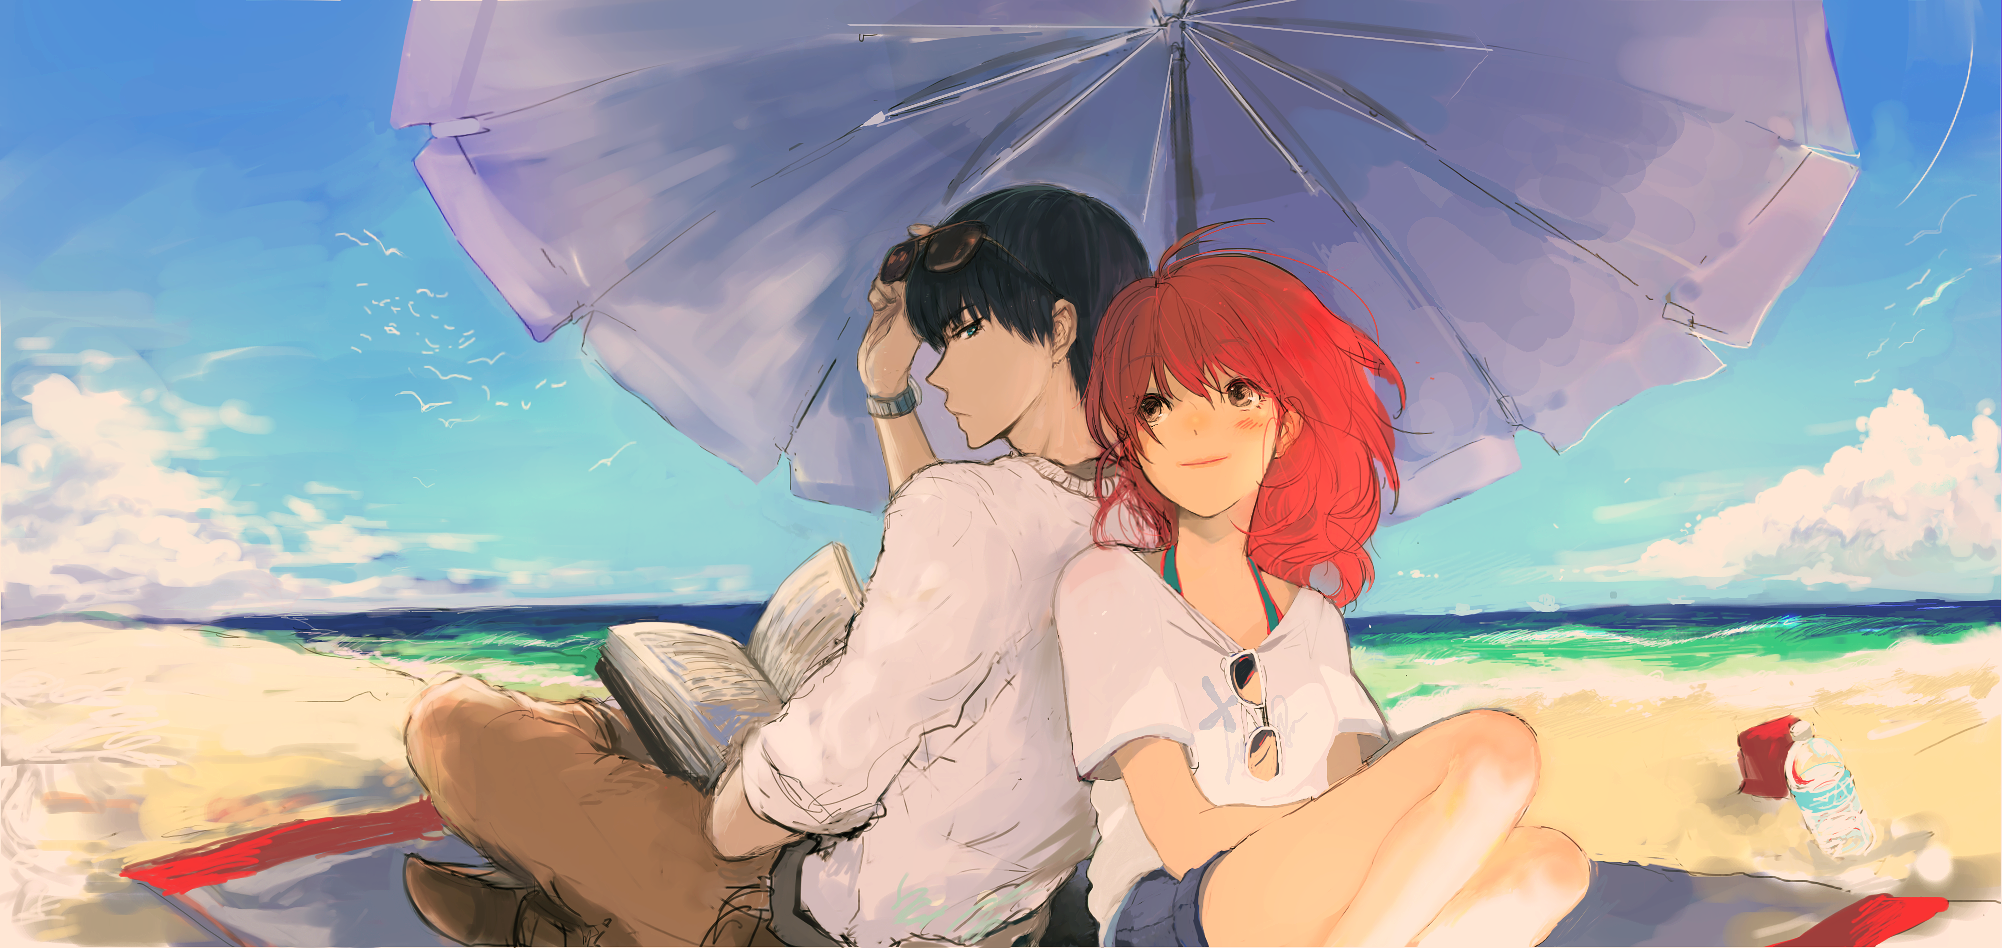 Couple Artwork Anime Anime Boys Anime Girls Beach 2002x948